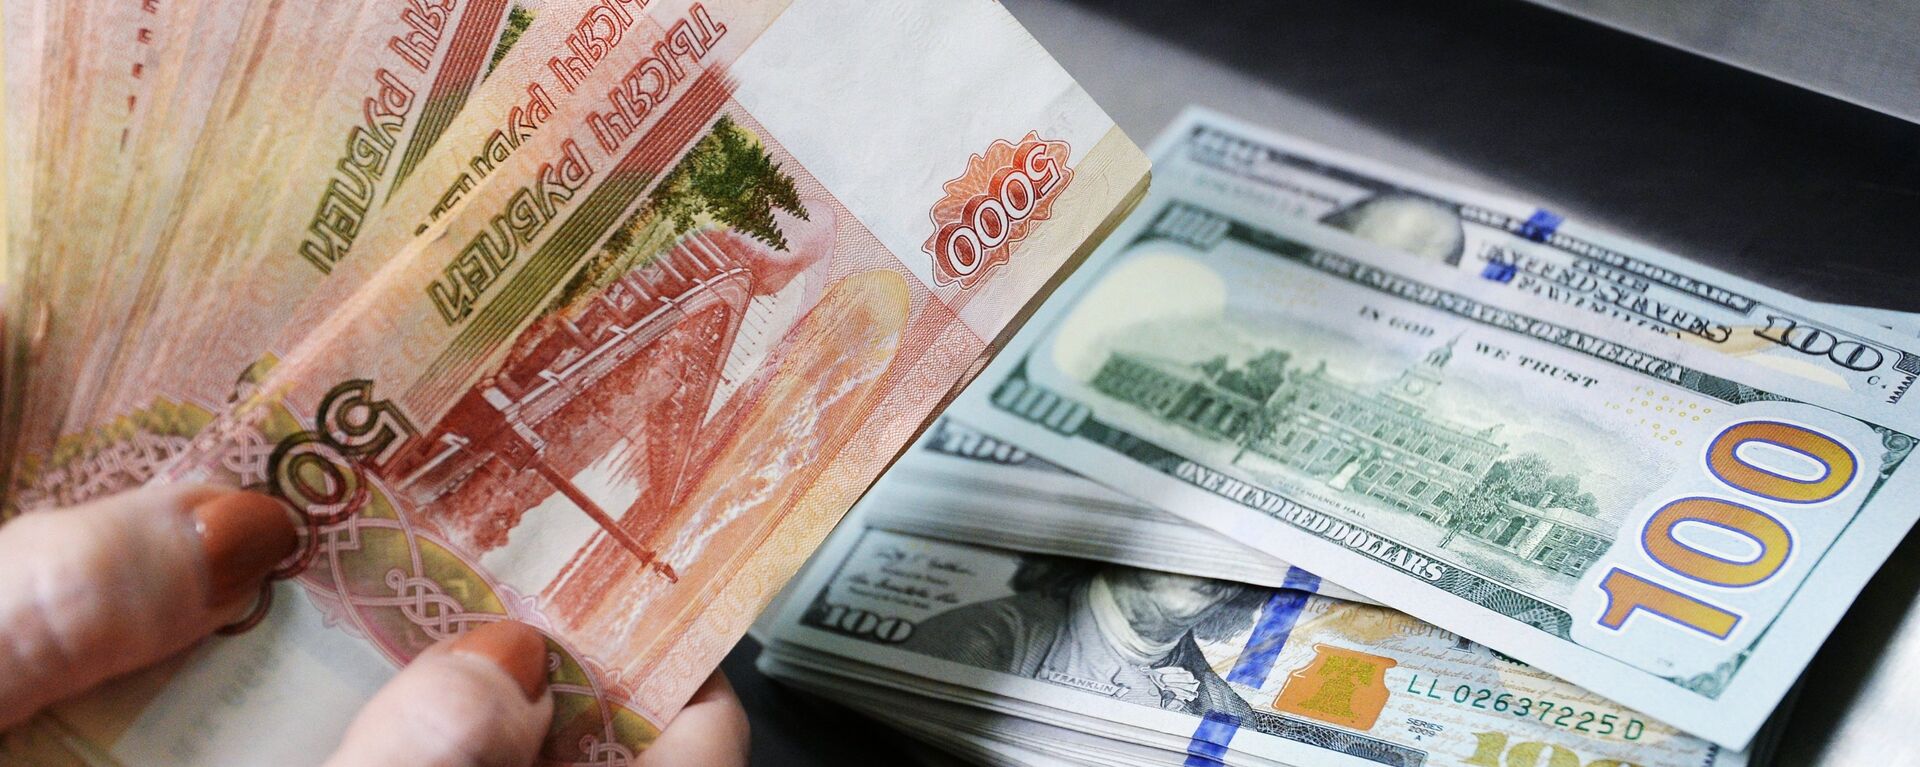 Доллары США и рубли в кассе. Архивное фото - Sputnik Кыргызстан, 1920, 09.02.2021